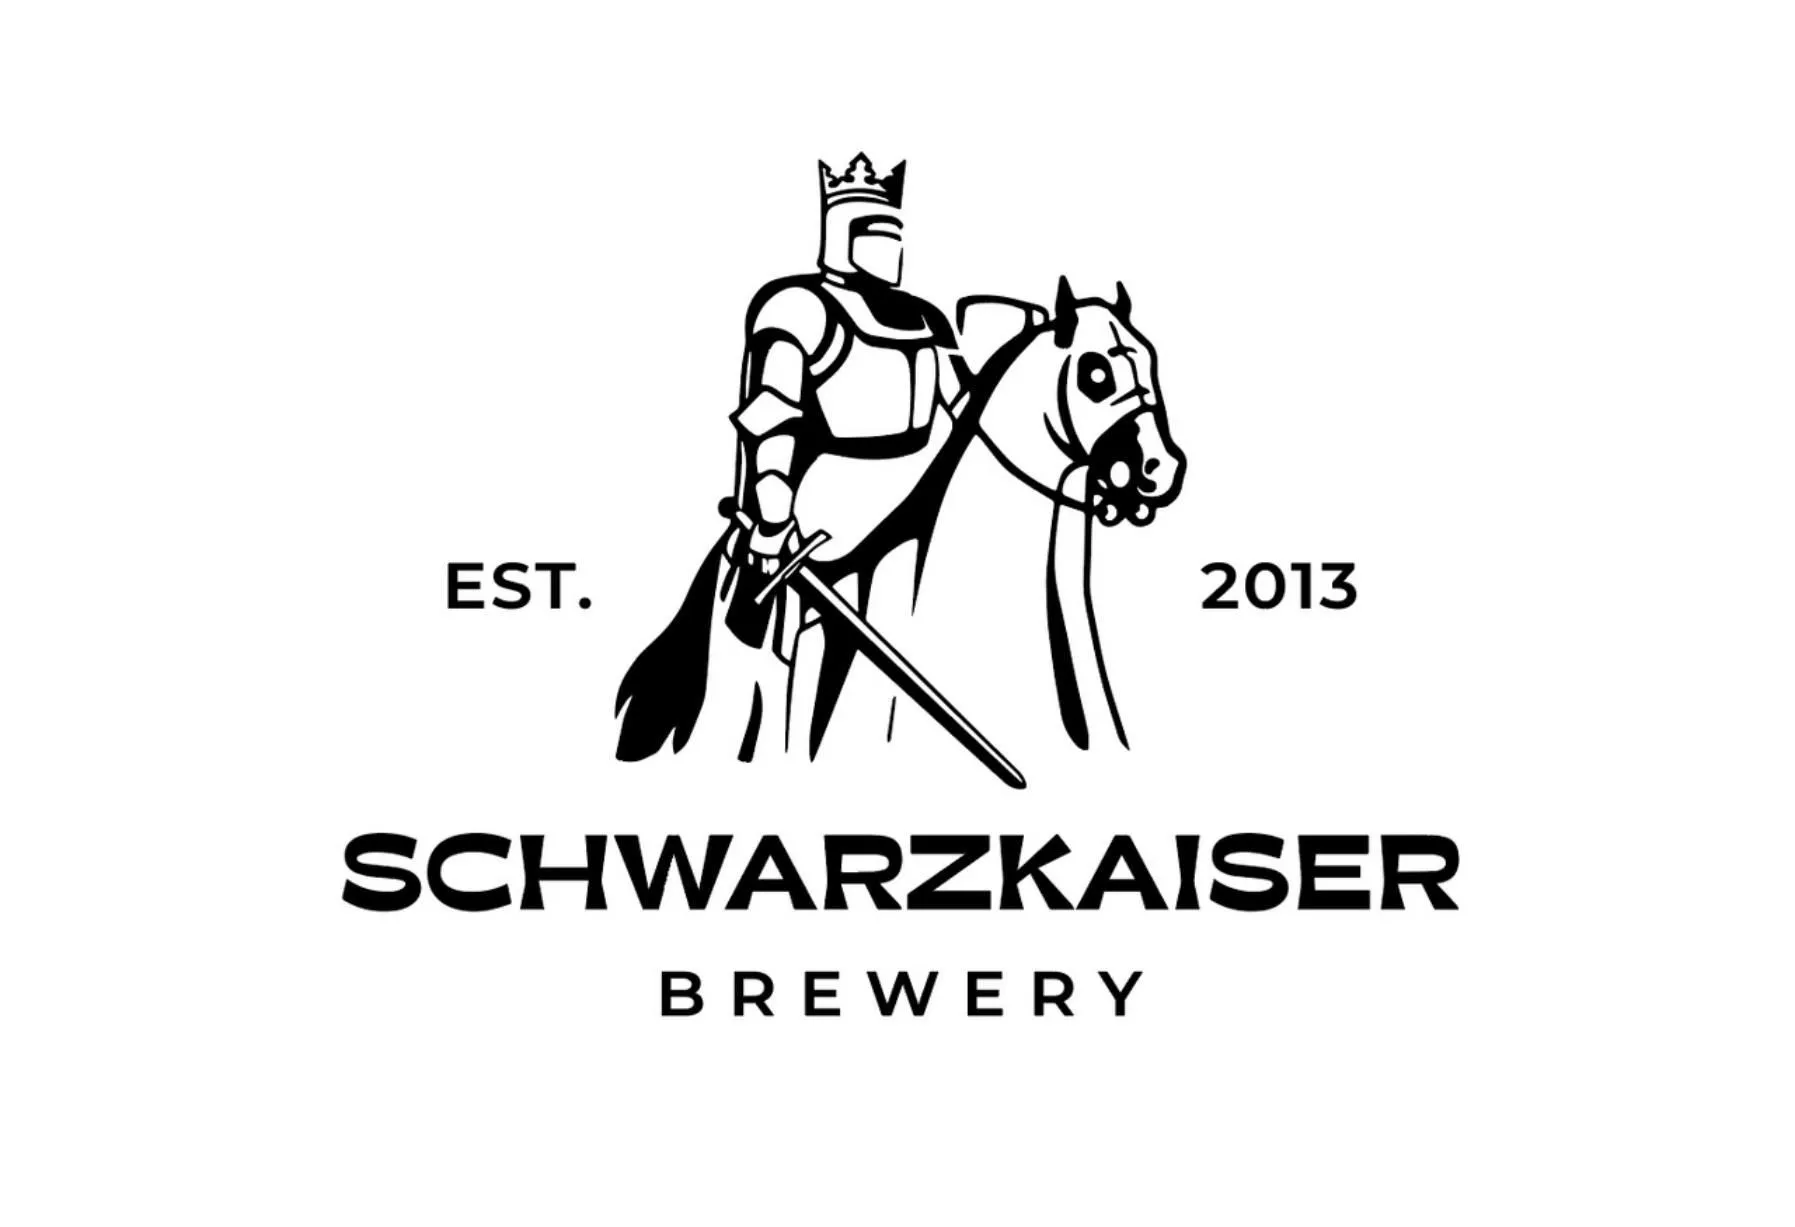 Schwarzkaiser brewery